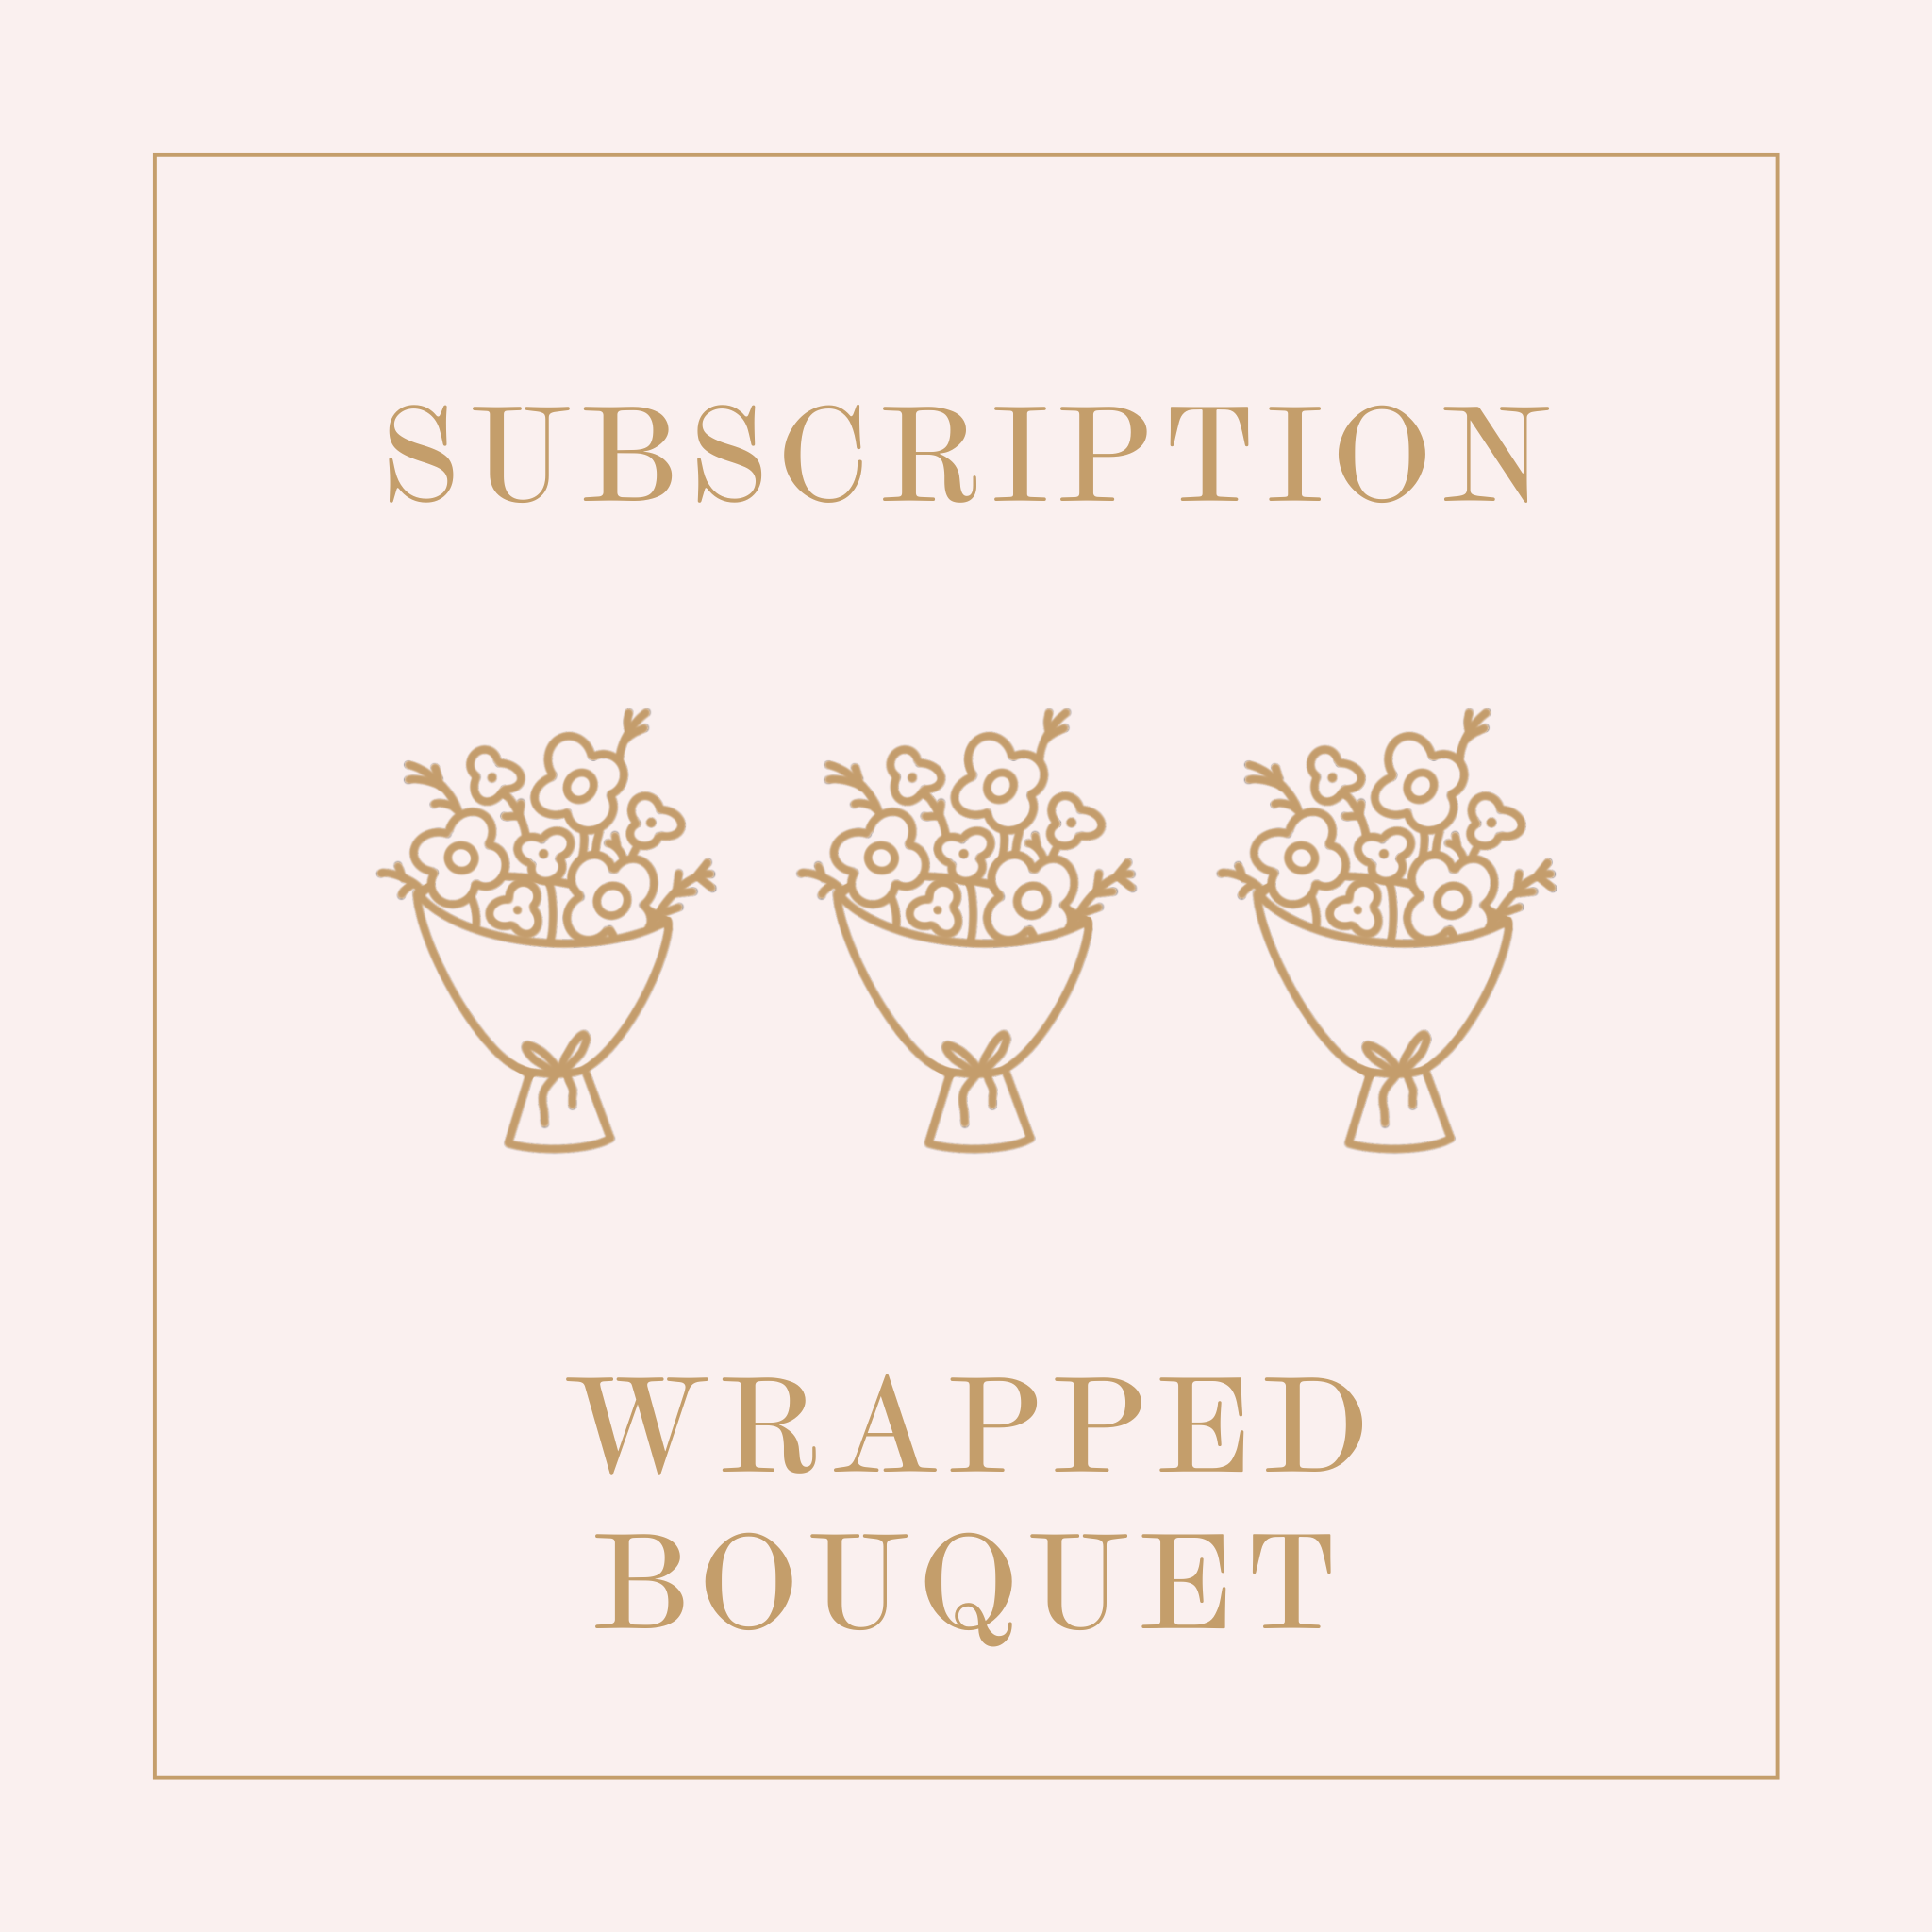 Signature Bouquet Subscription